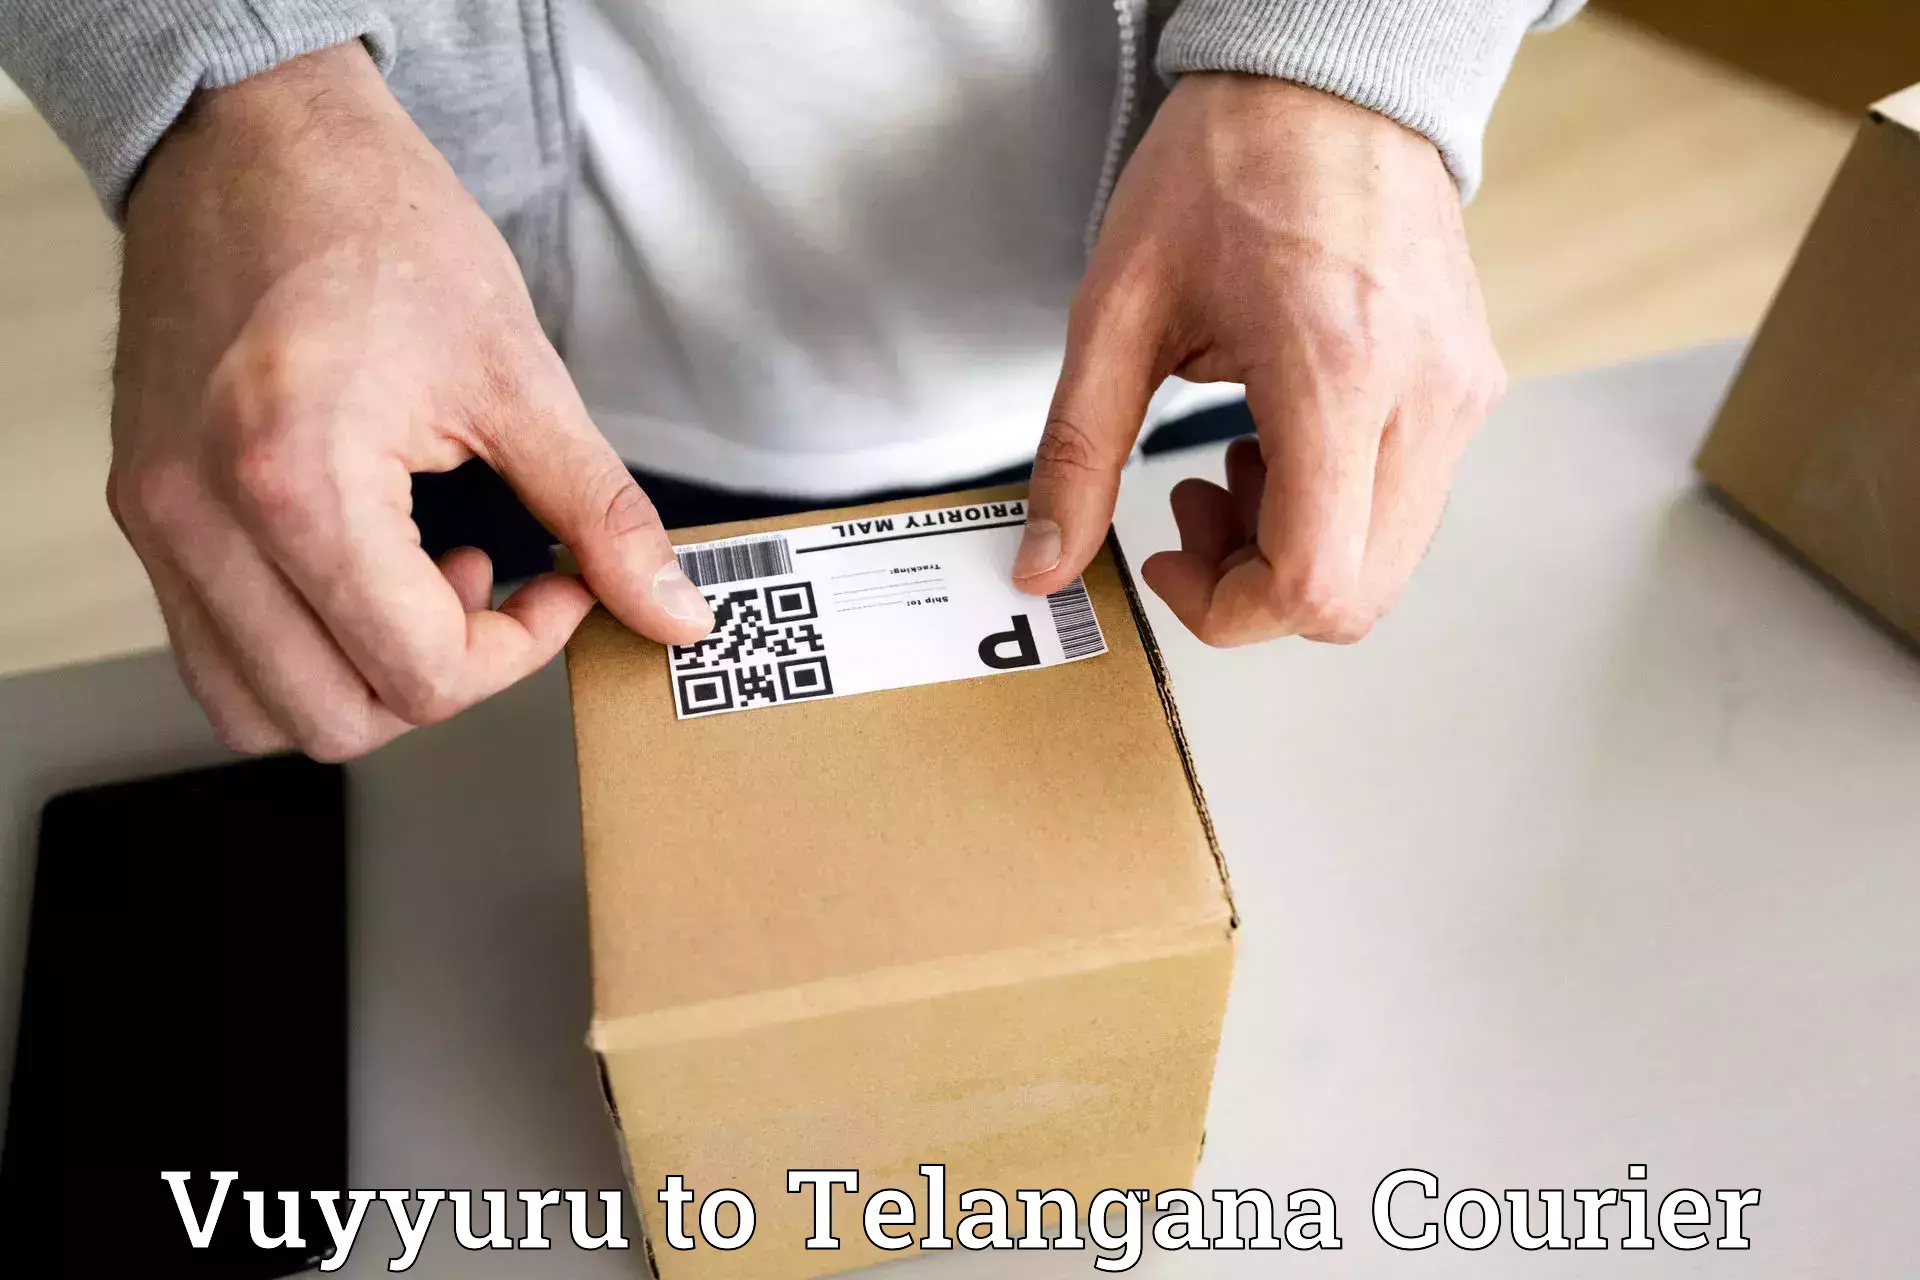 Secure packaging Vuyyuru to Ghatkesar